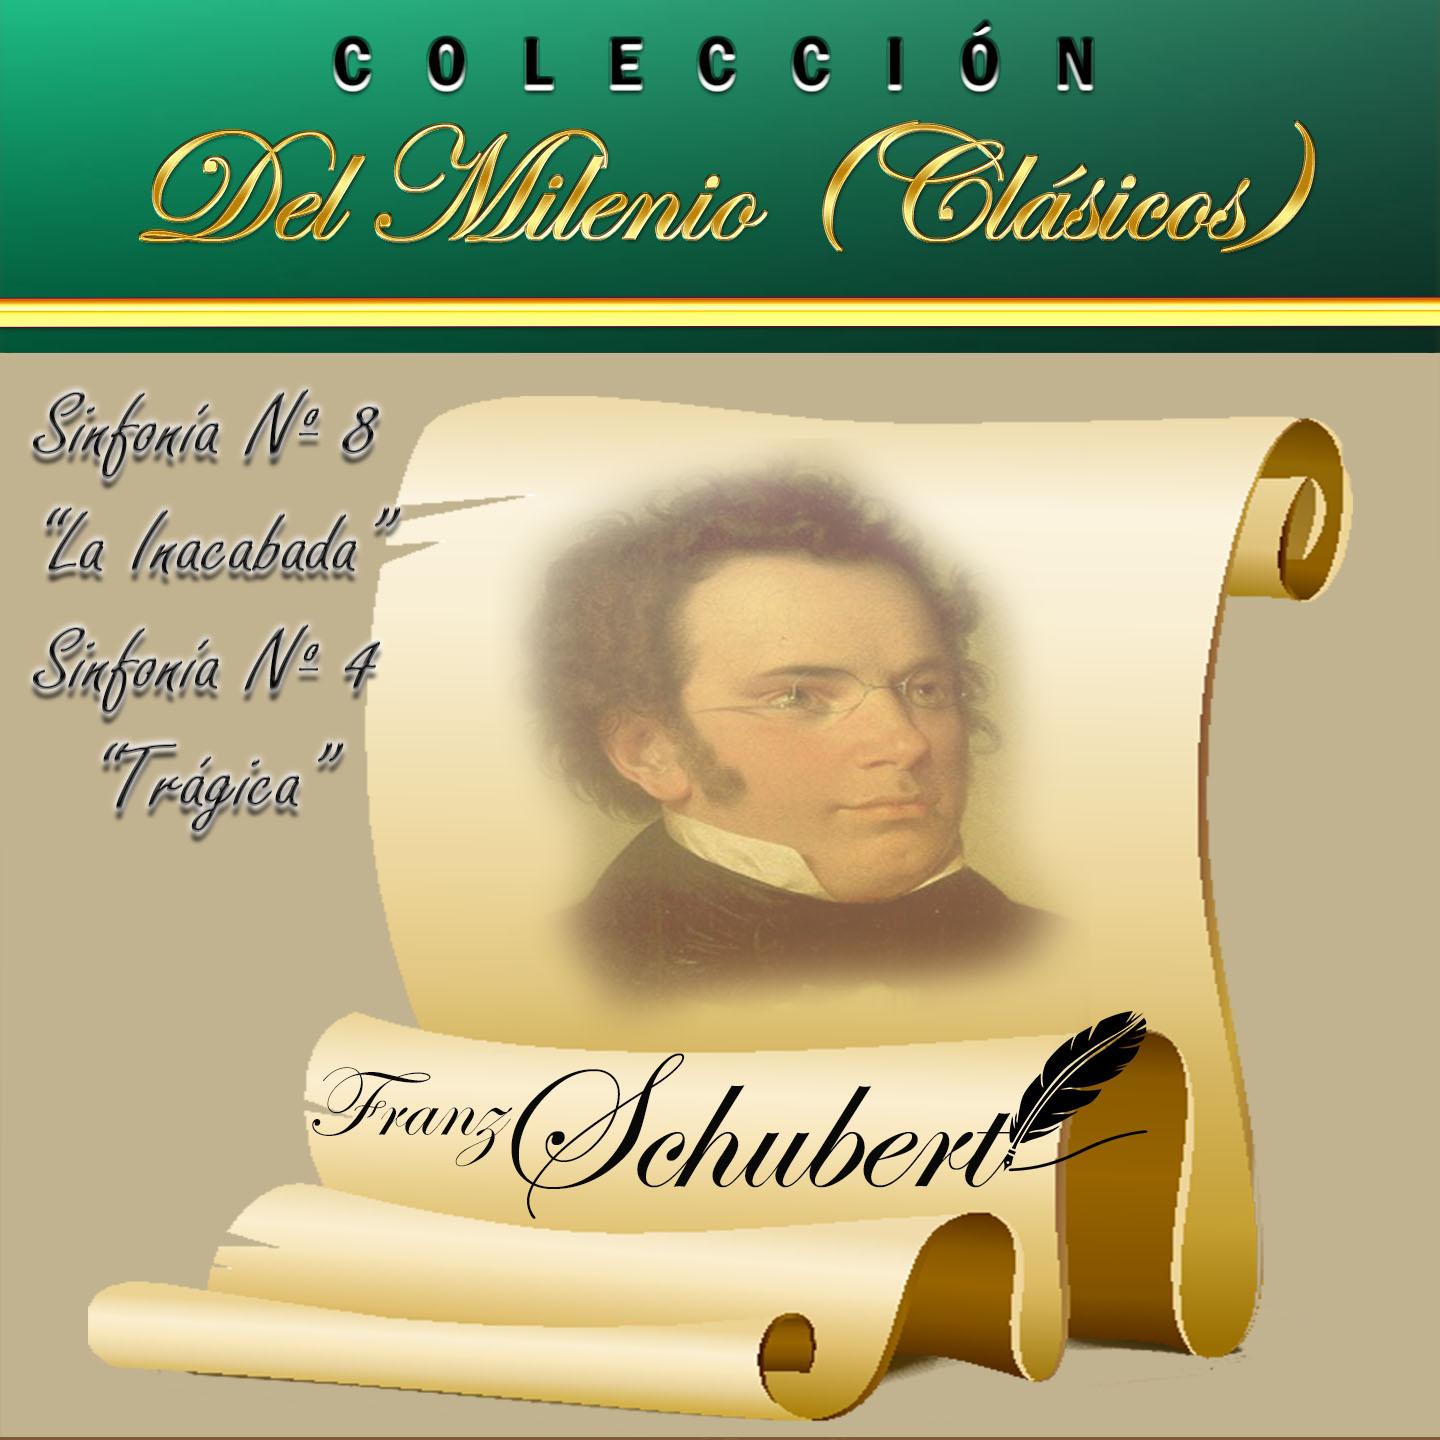 Coleccio n del Milenio Cla sicos: Sinfoni a No. 8 " La Inacabada", Sinfoni a No. 4 " Tra gica"